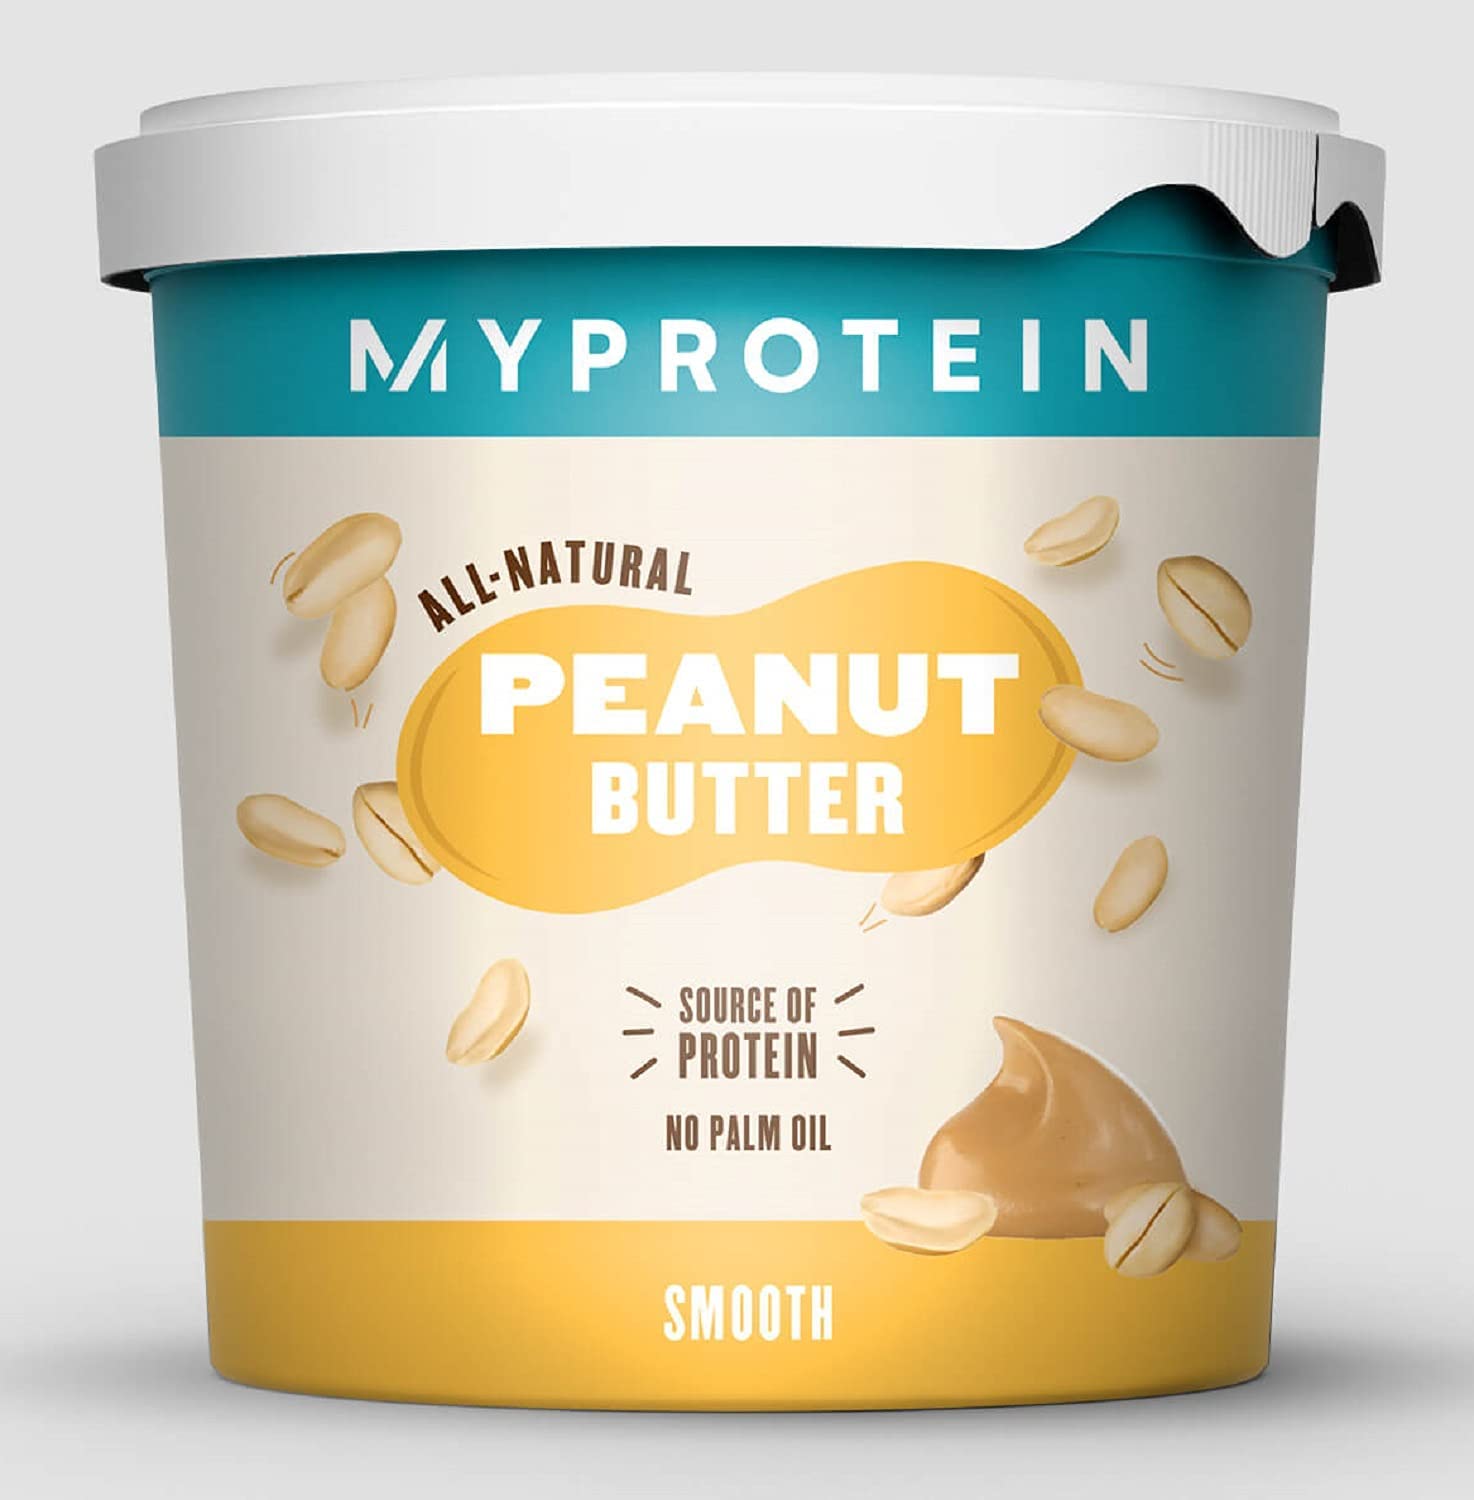 Photos - Vitamins & Minerals Myprotein All-Natural Peanut Butter 1kg Smooth TROP-MYP131 